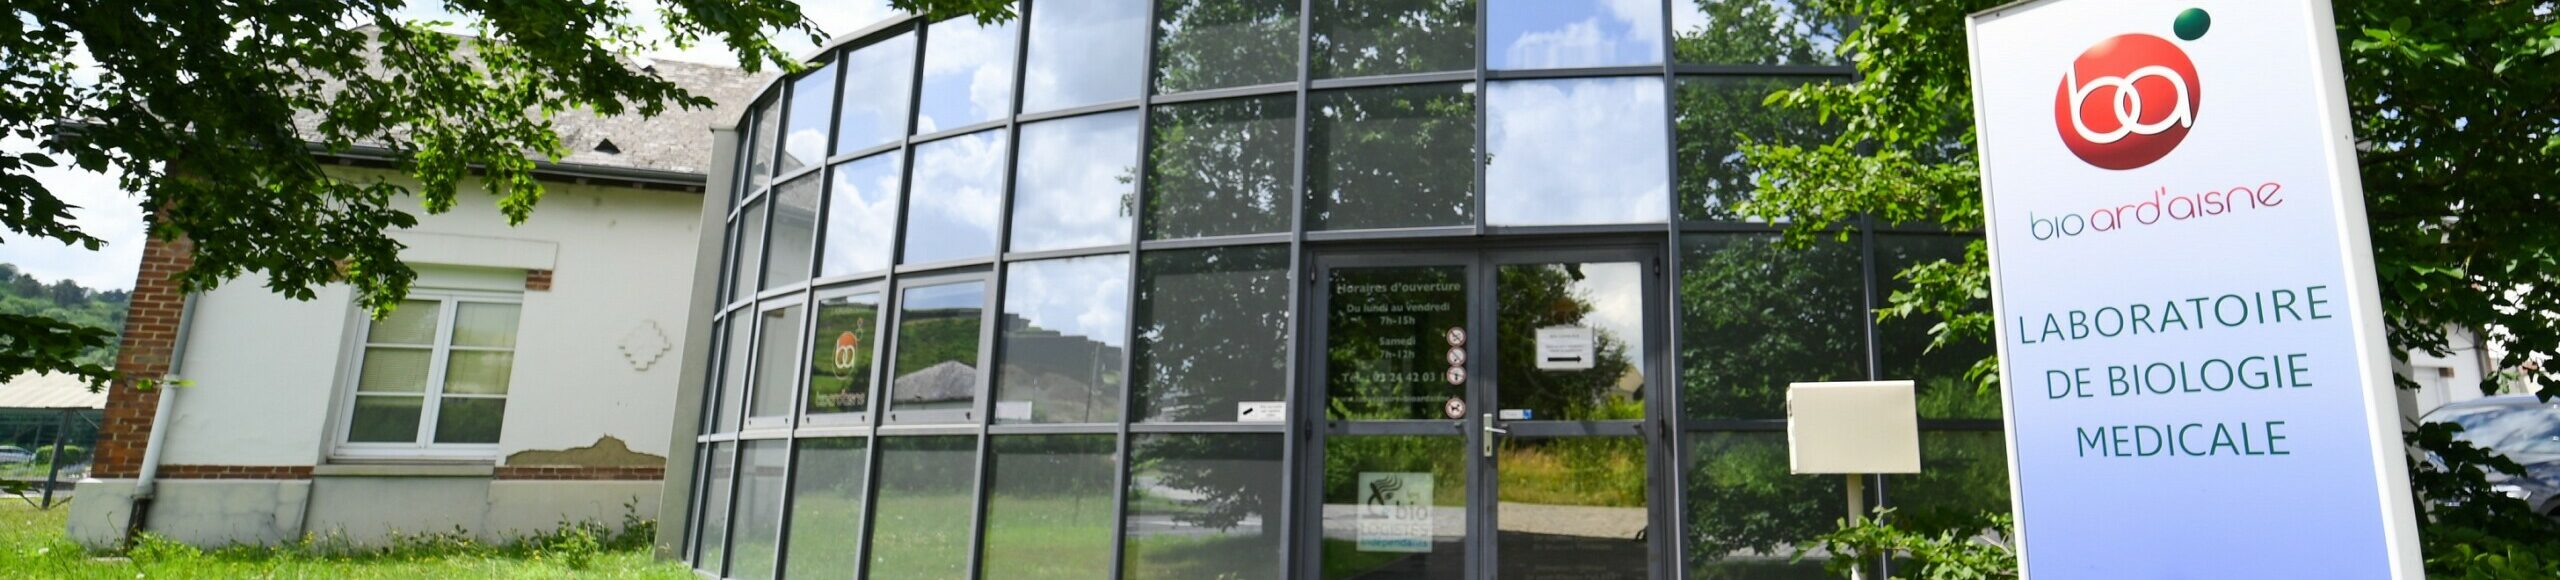 Vue extérieure d'un bâtiment de laboratoire médical avec une grande façade vitrée et une enseigne portant le logo "Laboratoire Givet Bio Ard'Aisne".